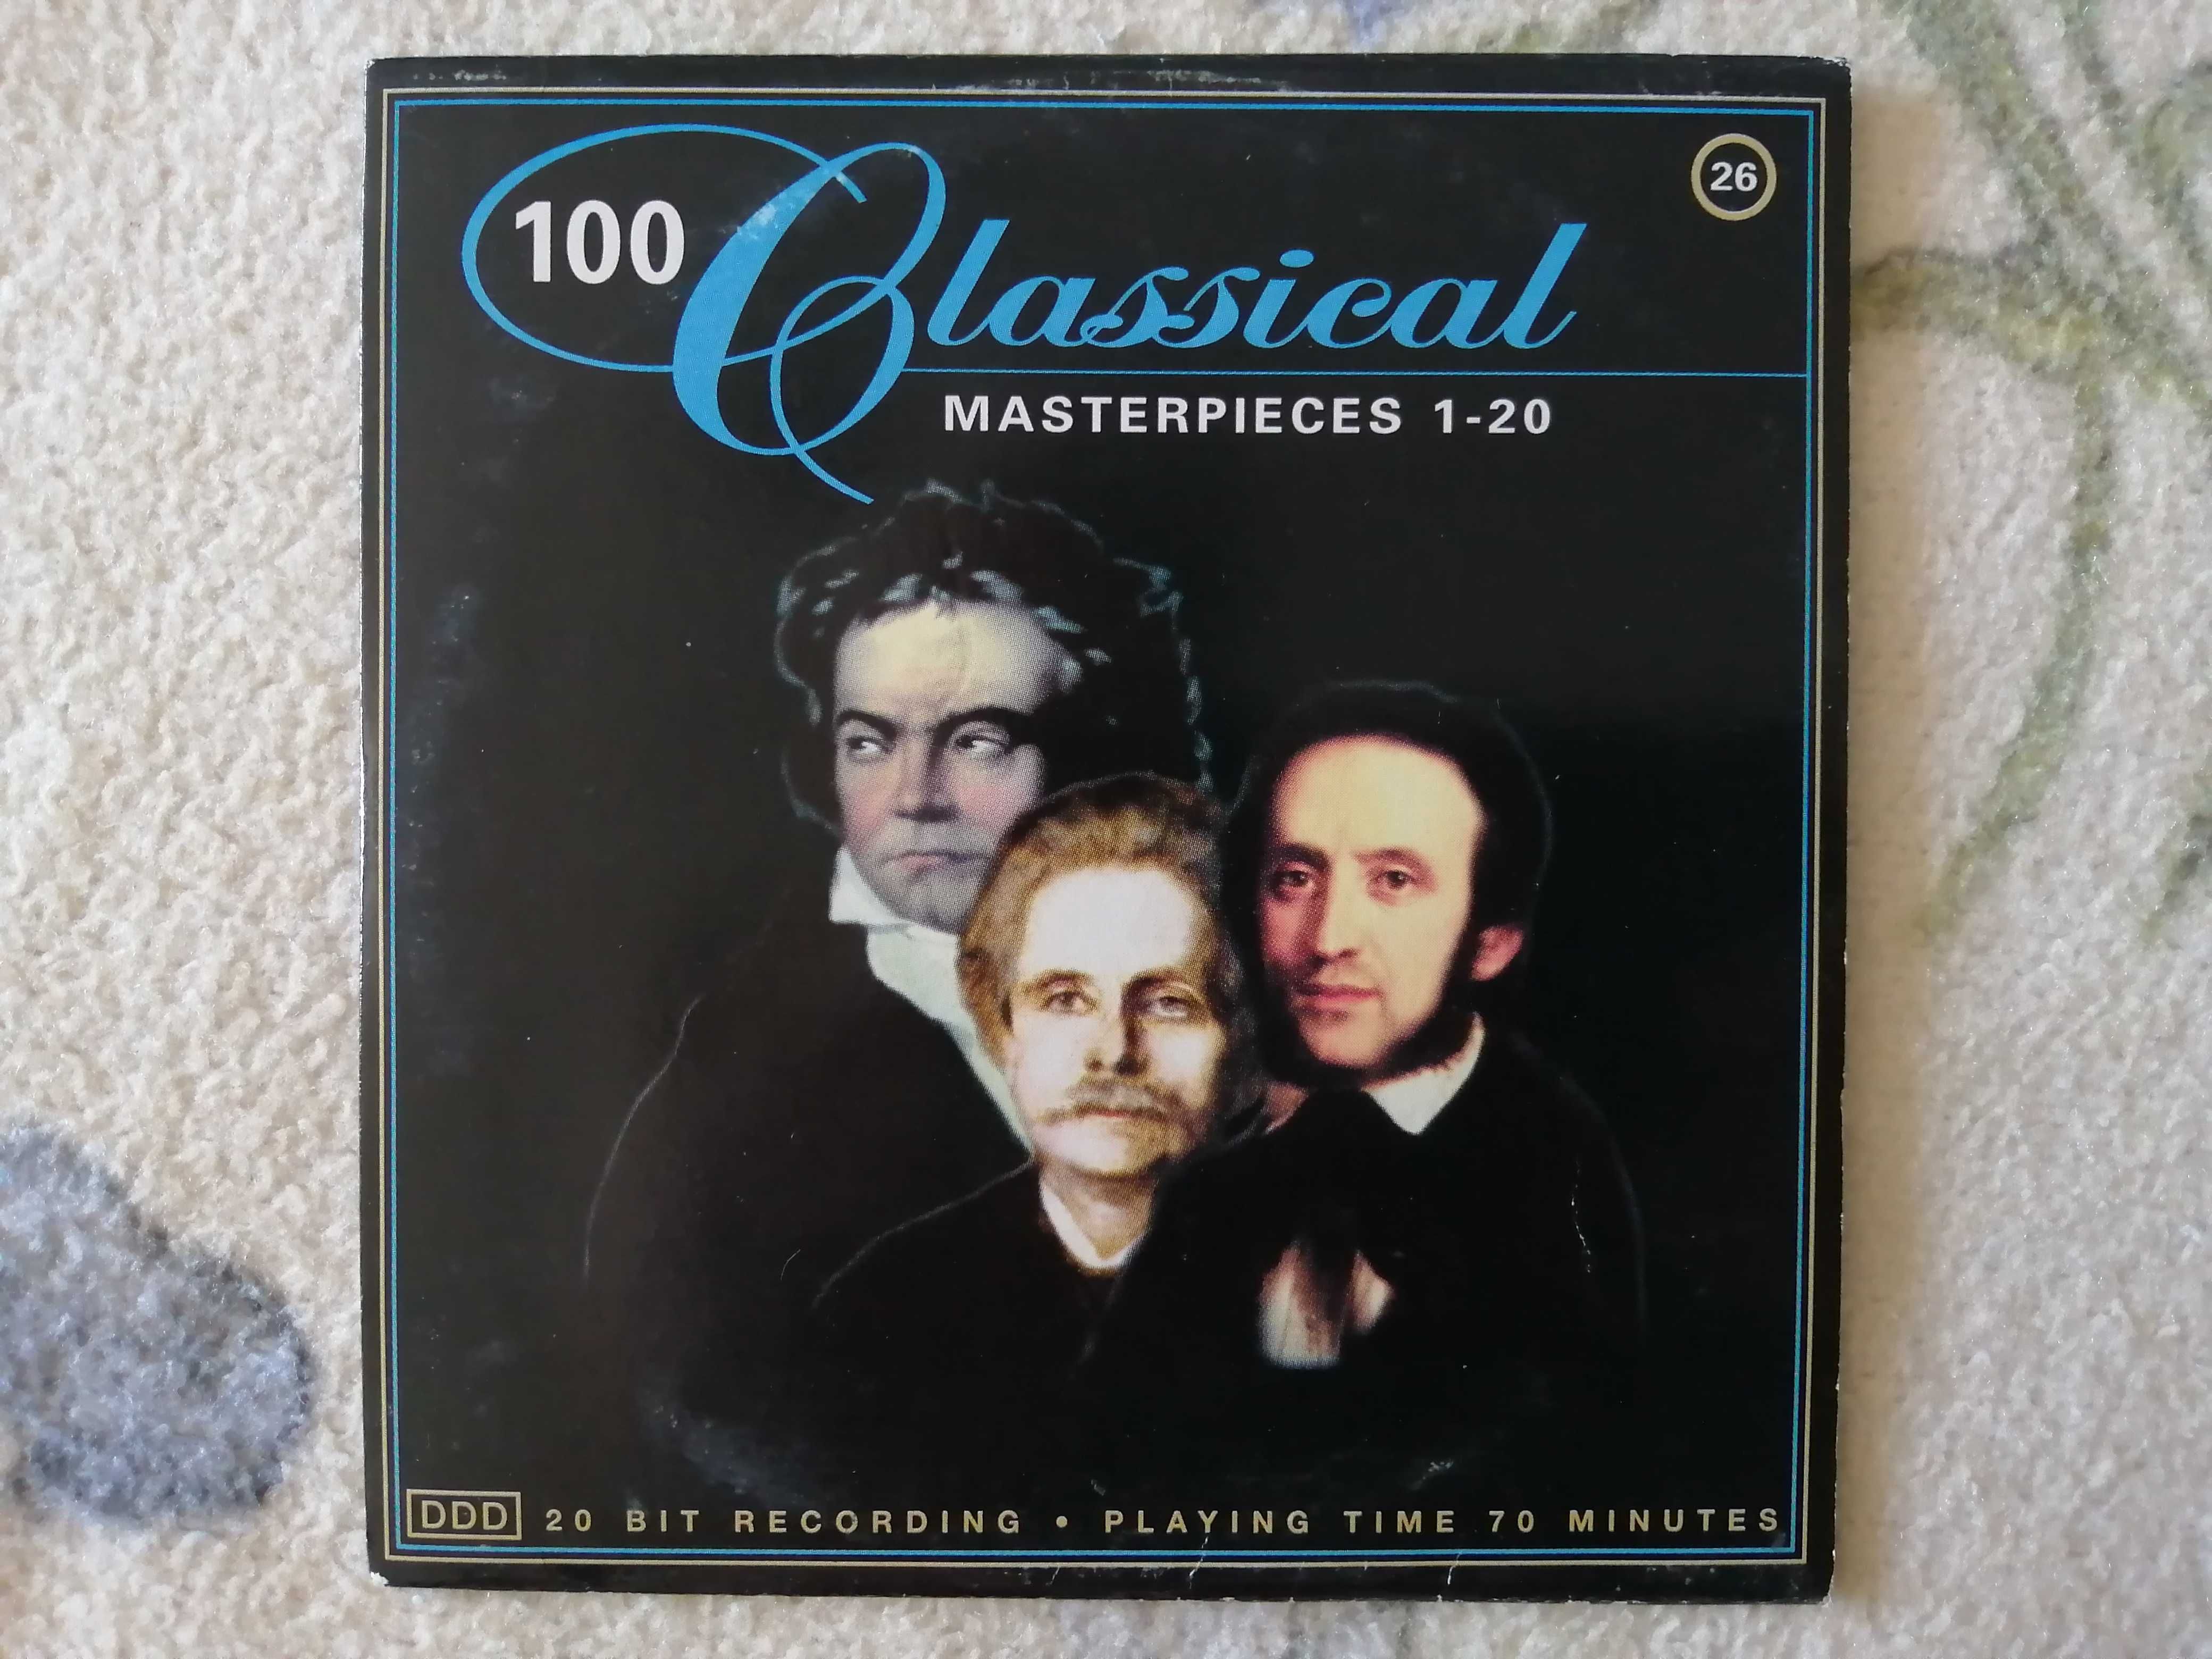 Vand 5 CD-uri muzica clasica "Classical Masterpieces"